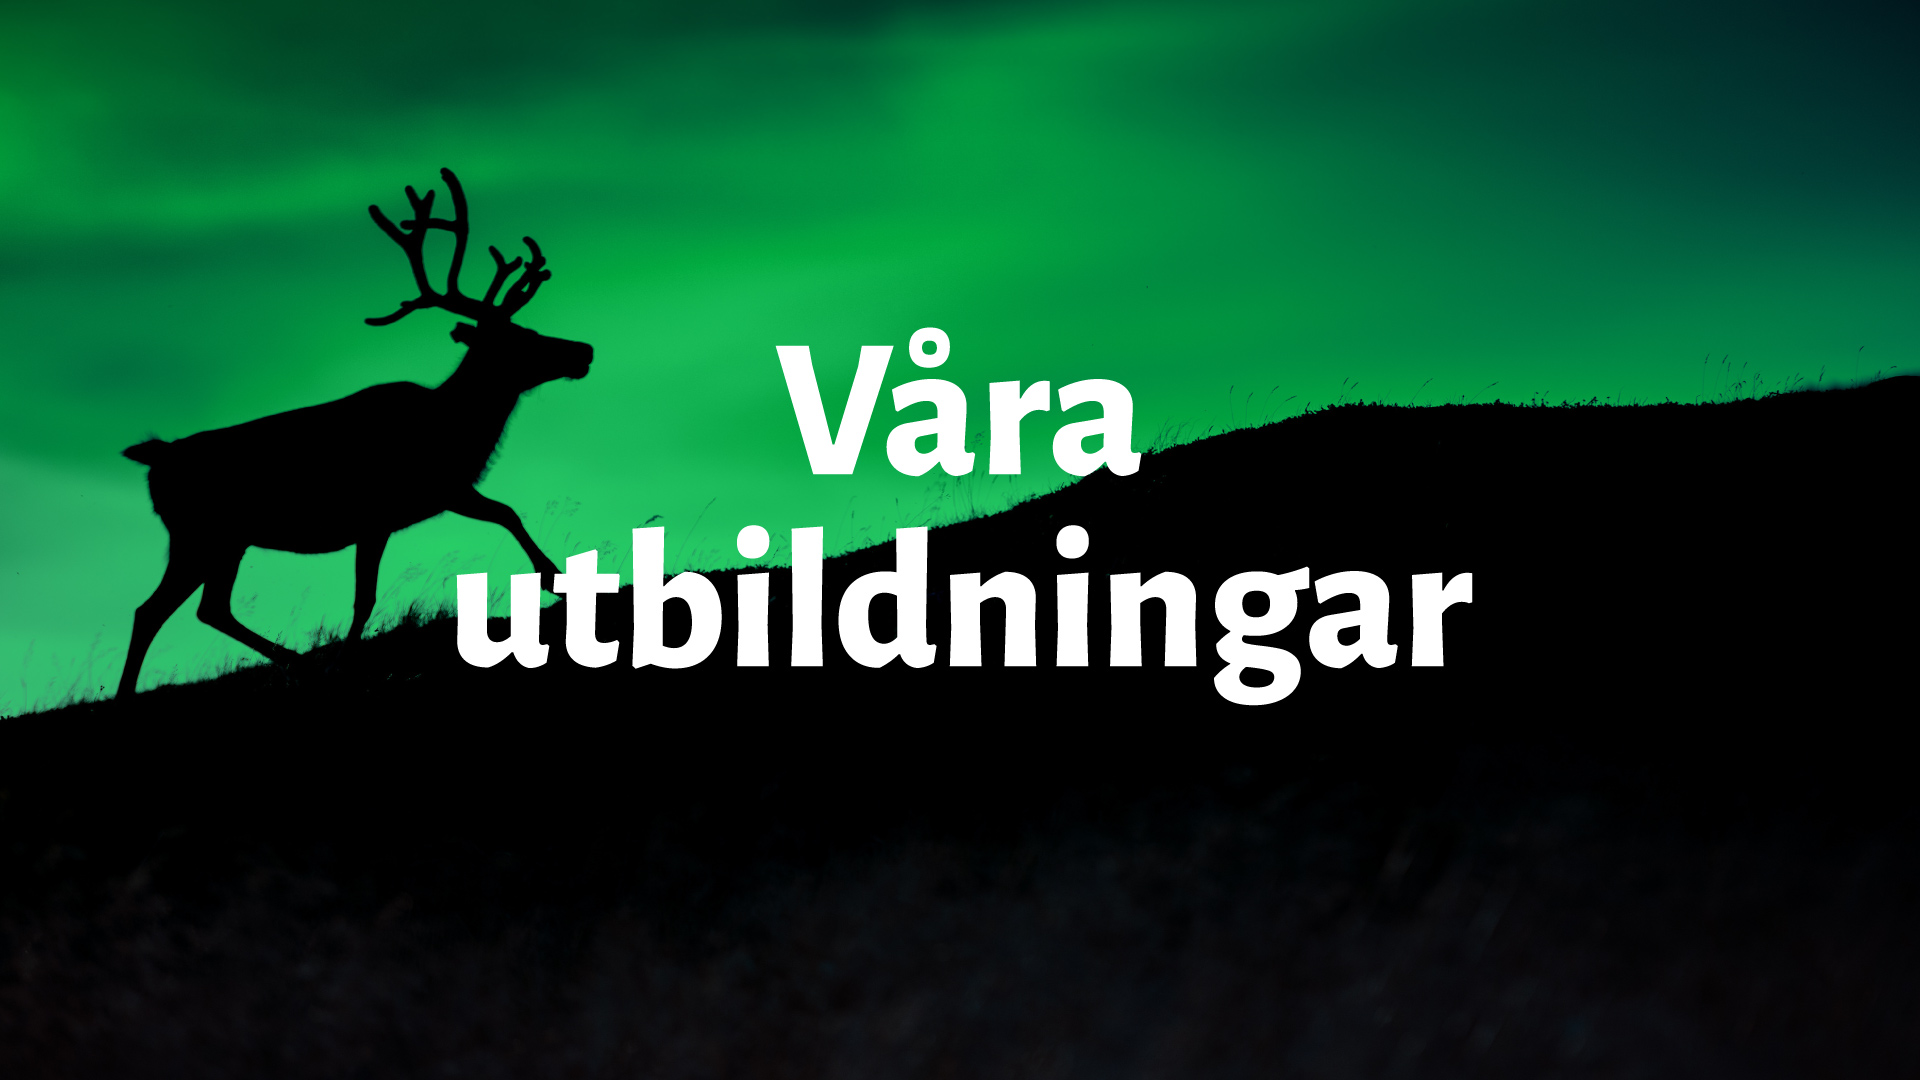 Mörk bild med grönt norrsken på himlen och en ren i förgrunden med texten "Våra utbildningar"